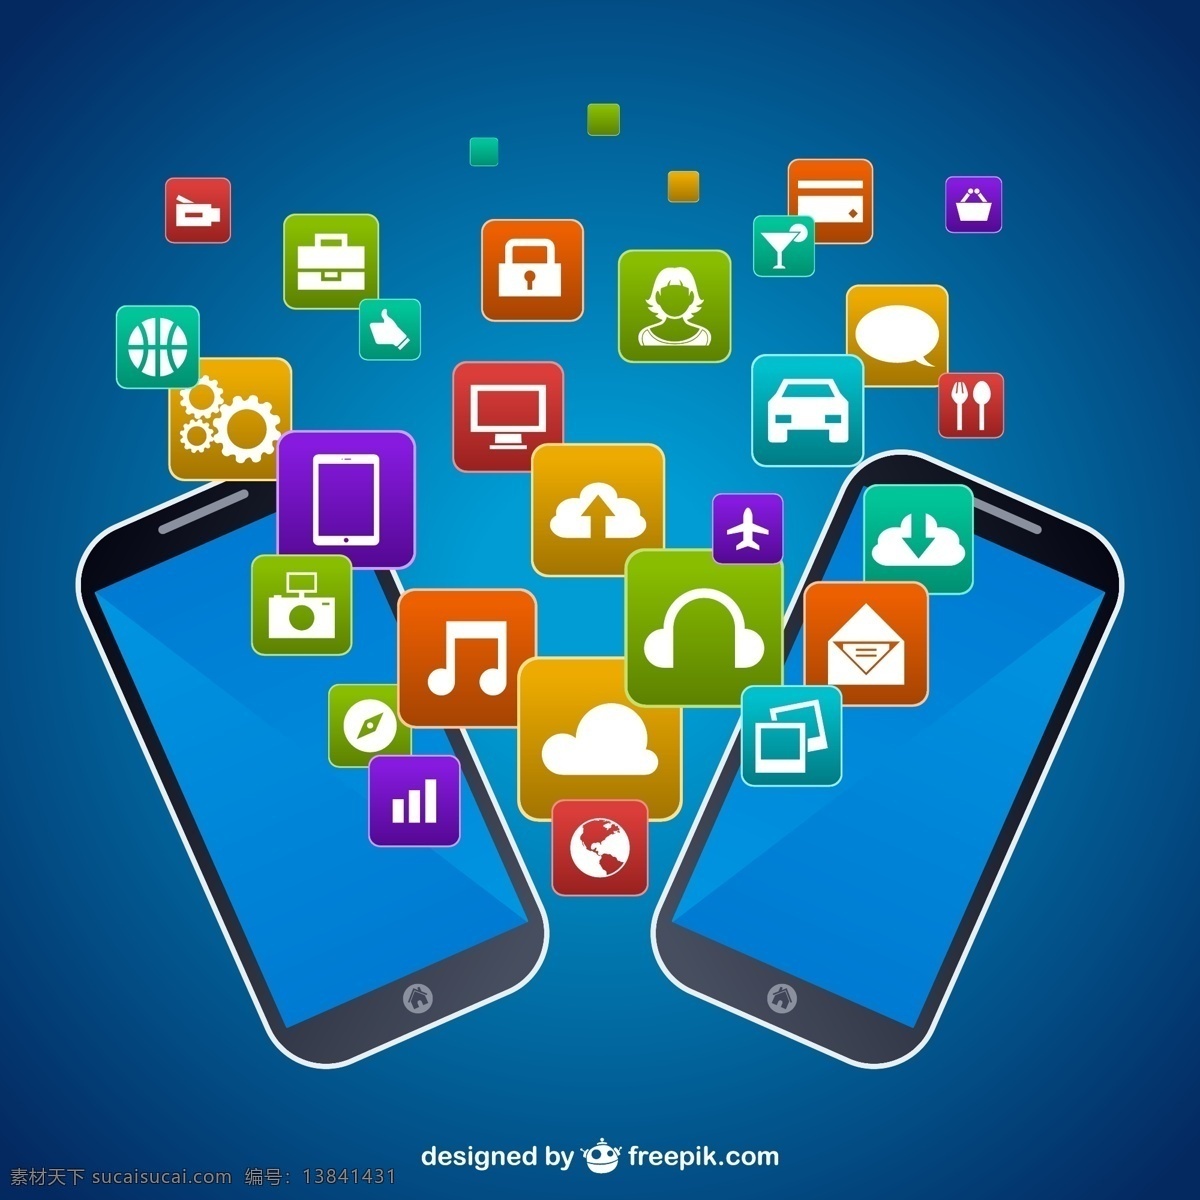 智能 手机 之间 应用程序 商务 图标 电话 技术 模板 移动 网络 营销 图形 布局 智能手机 通讯 平面设计 手机图标 元素 蓝色